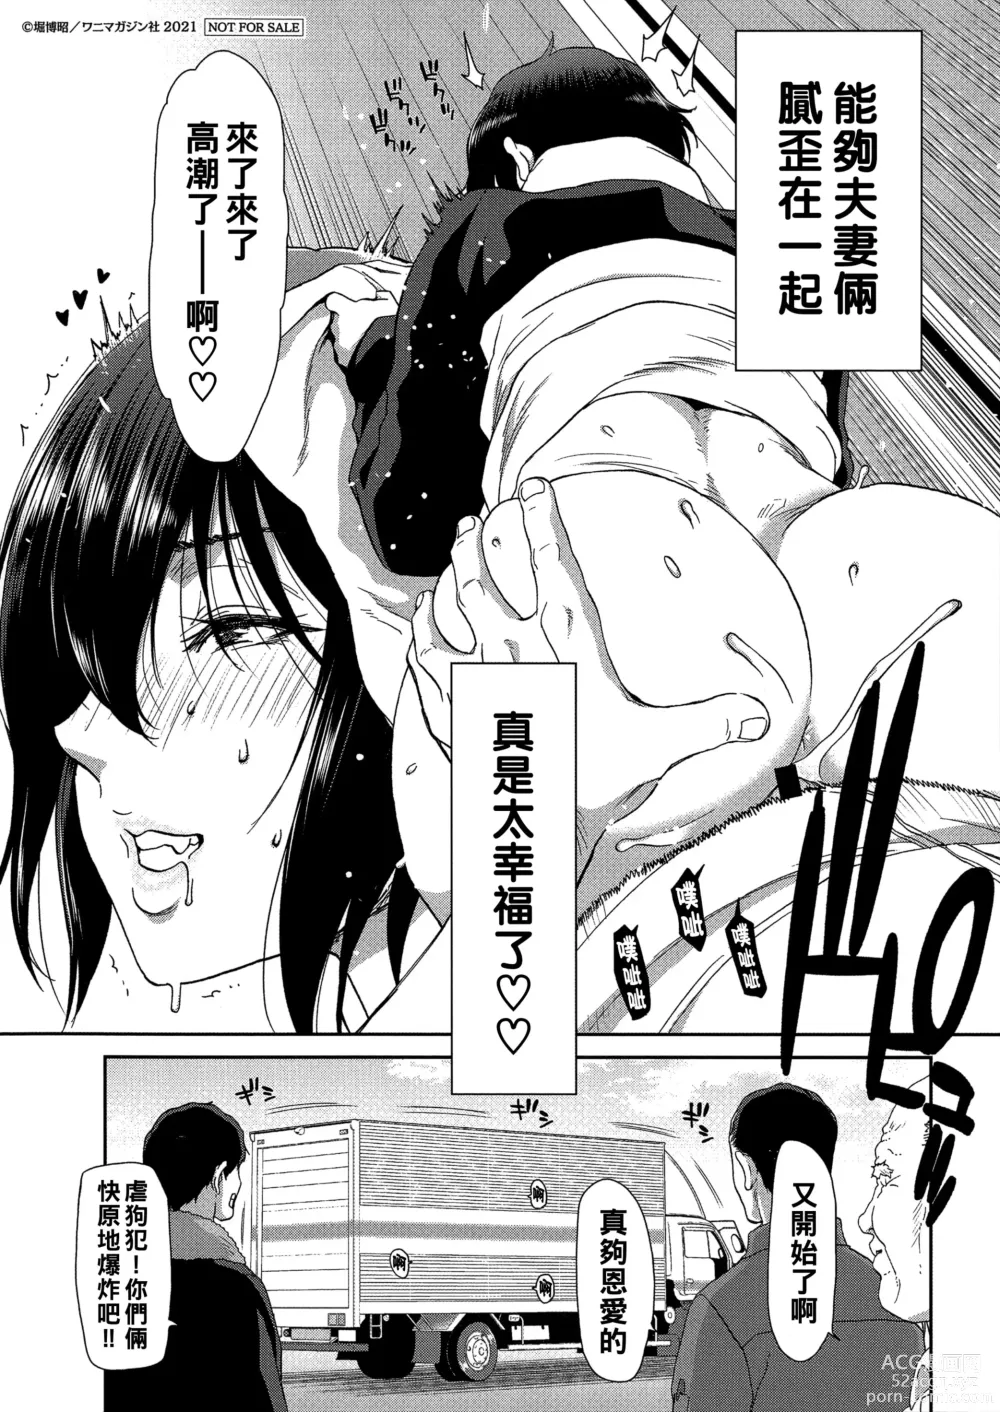 Page 185 of manga Iede Onna o Hirottara - When I picked up a runaway girl. + Melonbooks Gentei Tokuten   Otona no Iede Gojitsudan Sono Ato no Arisa to Akira